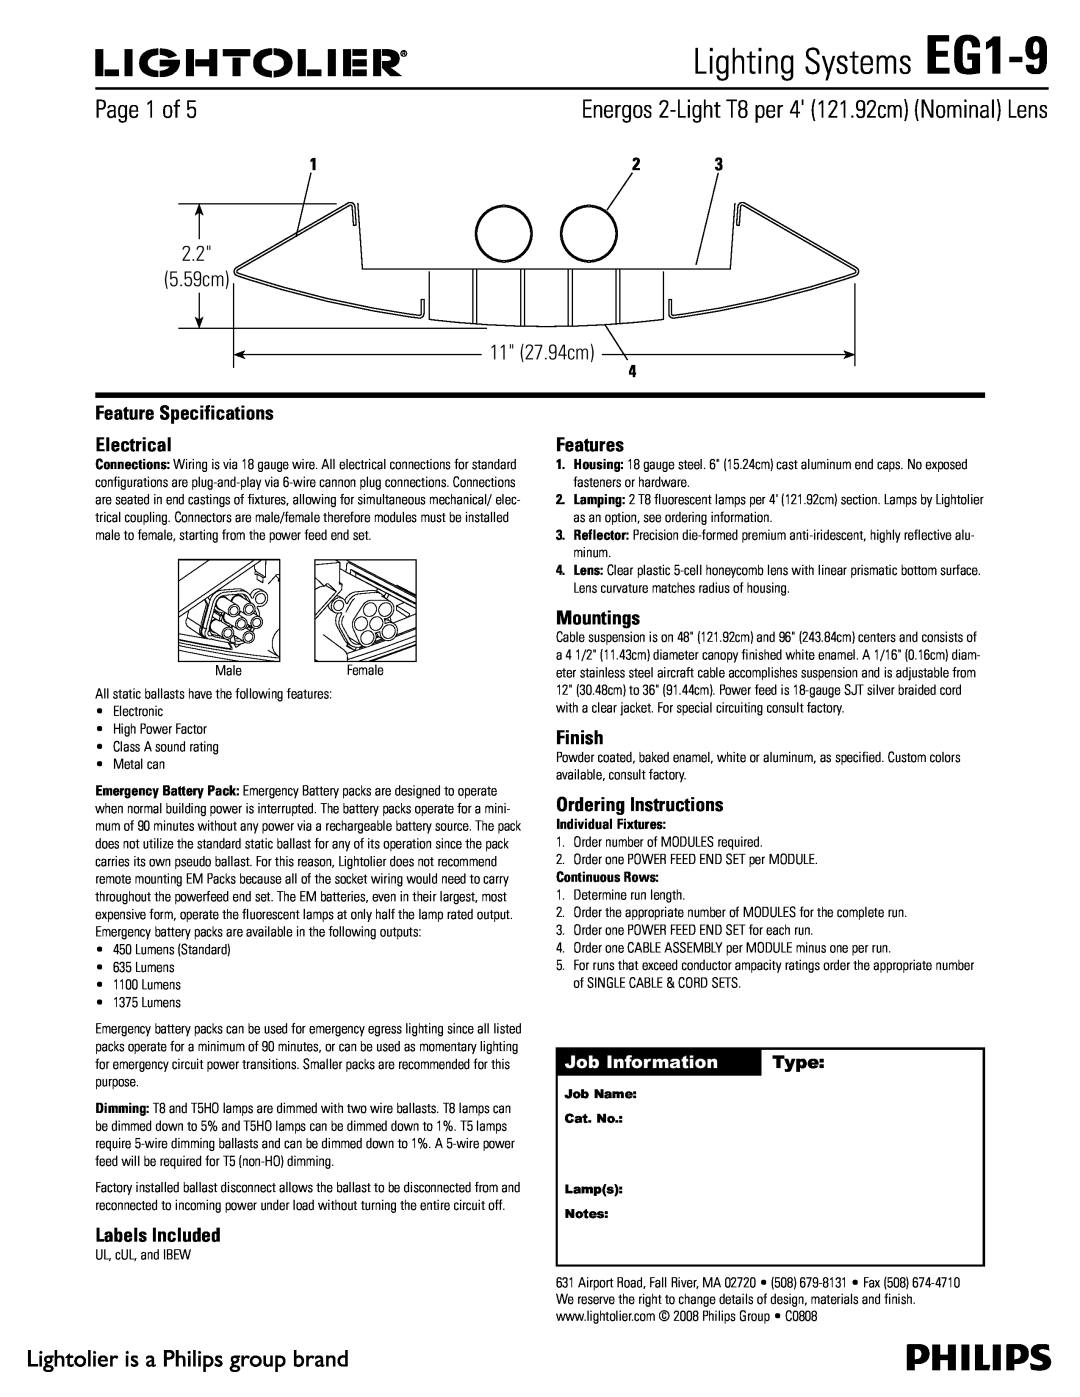 Lightolier specifications Lighting Systems EG1-9,  Dn  Dn, Job Information, Type 